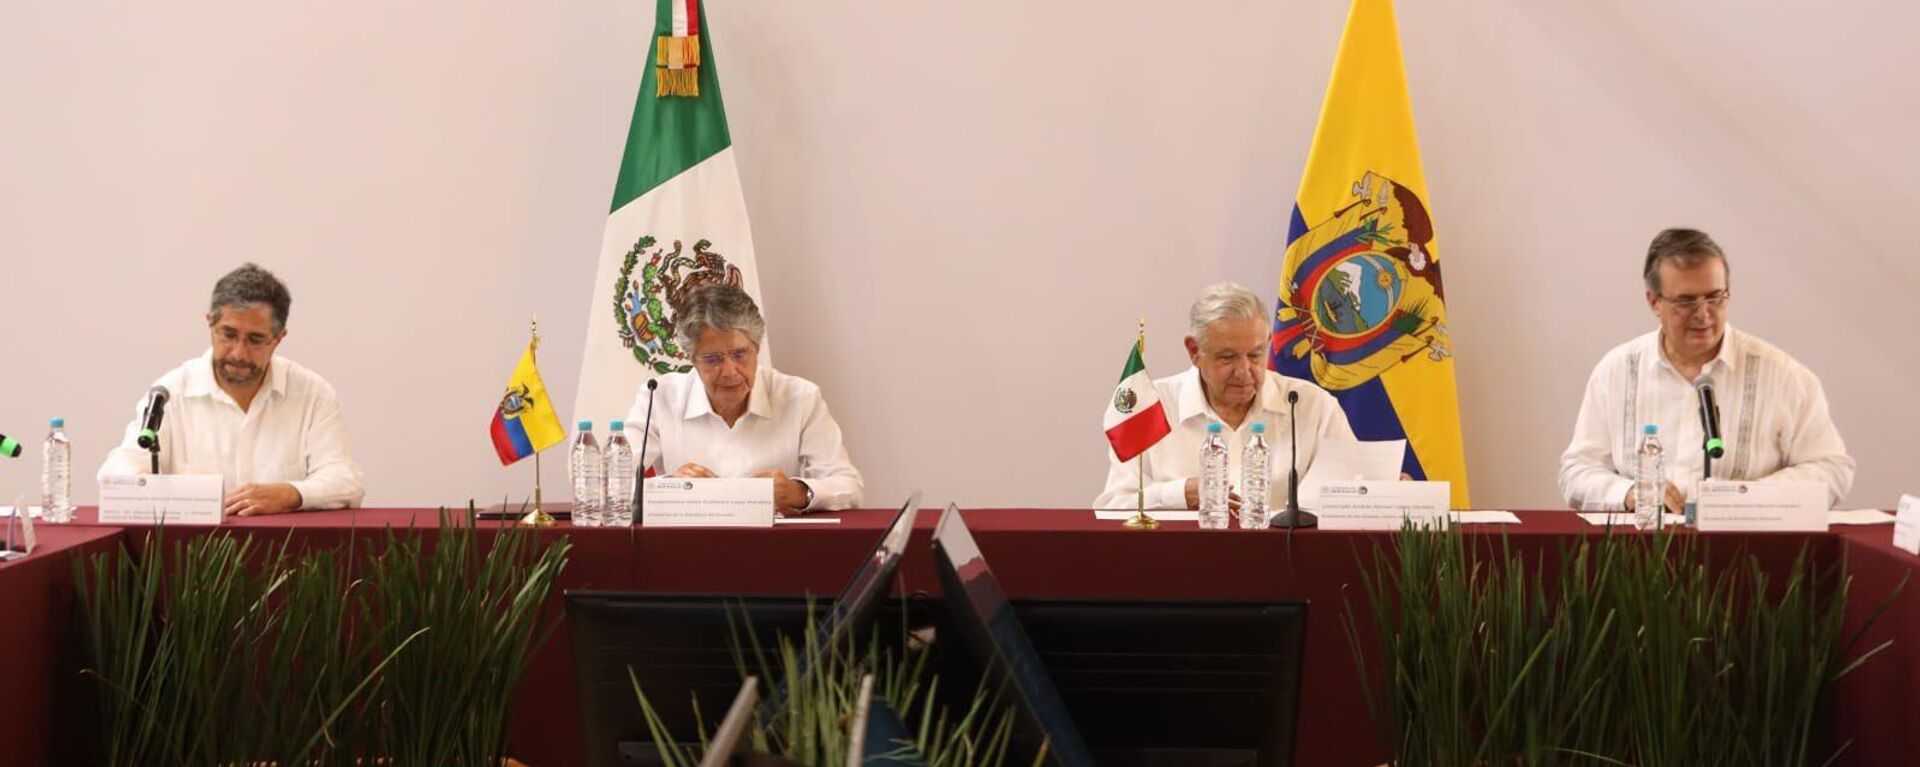 Reunión de los presidentes de Ecuador y México, Guillermo Lasso y Andrés Manuel López Obrador - Sputnik Mundo, 1920, 30.05.2022